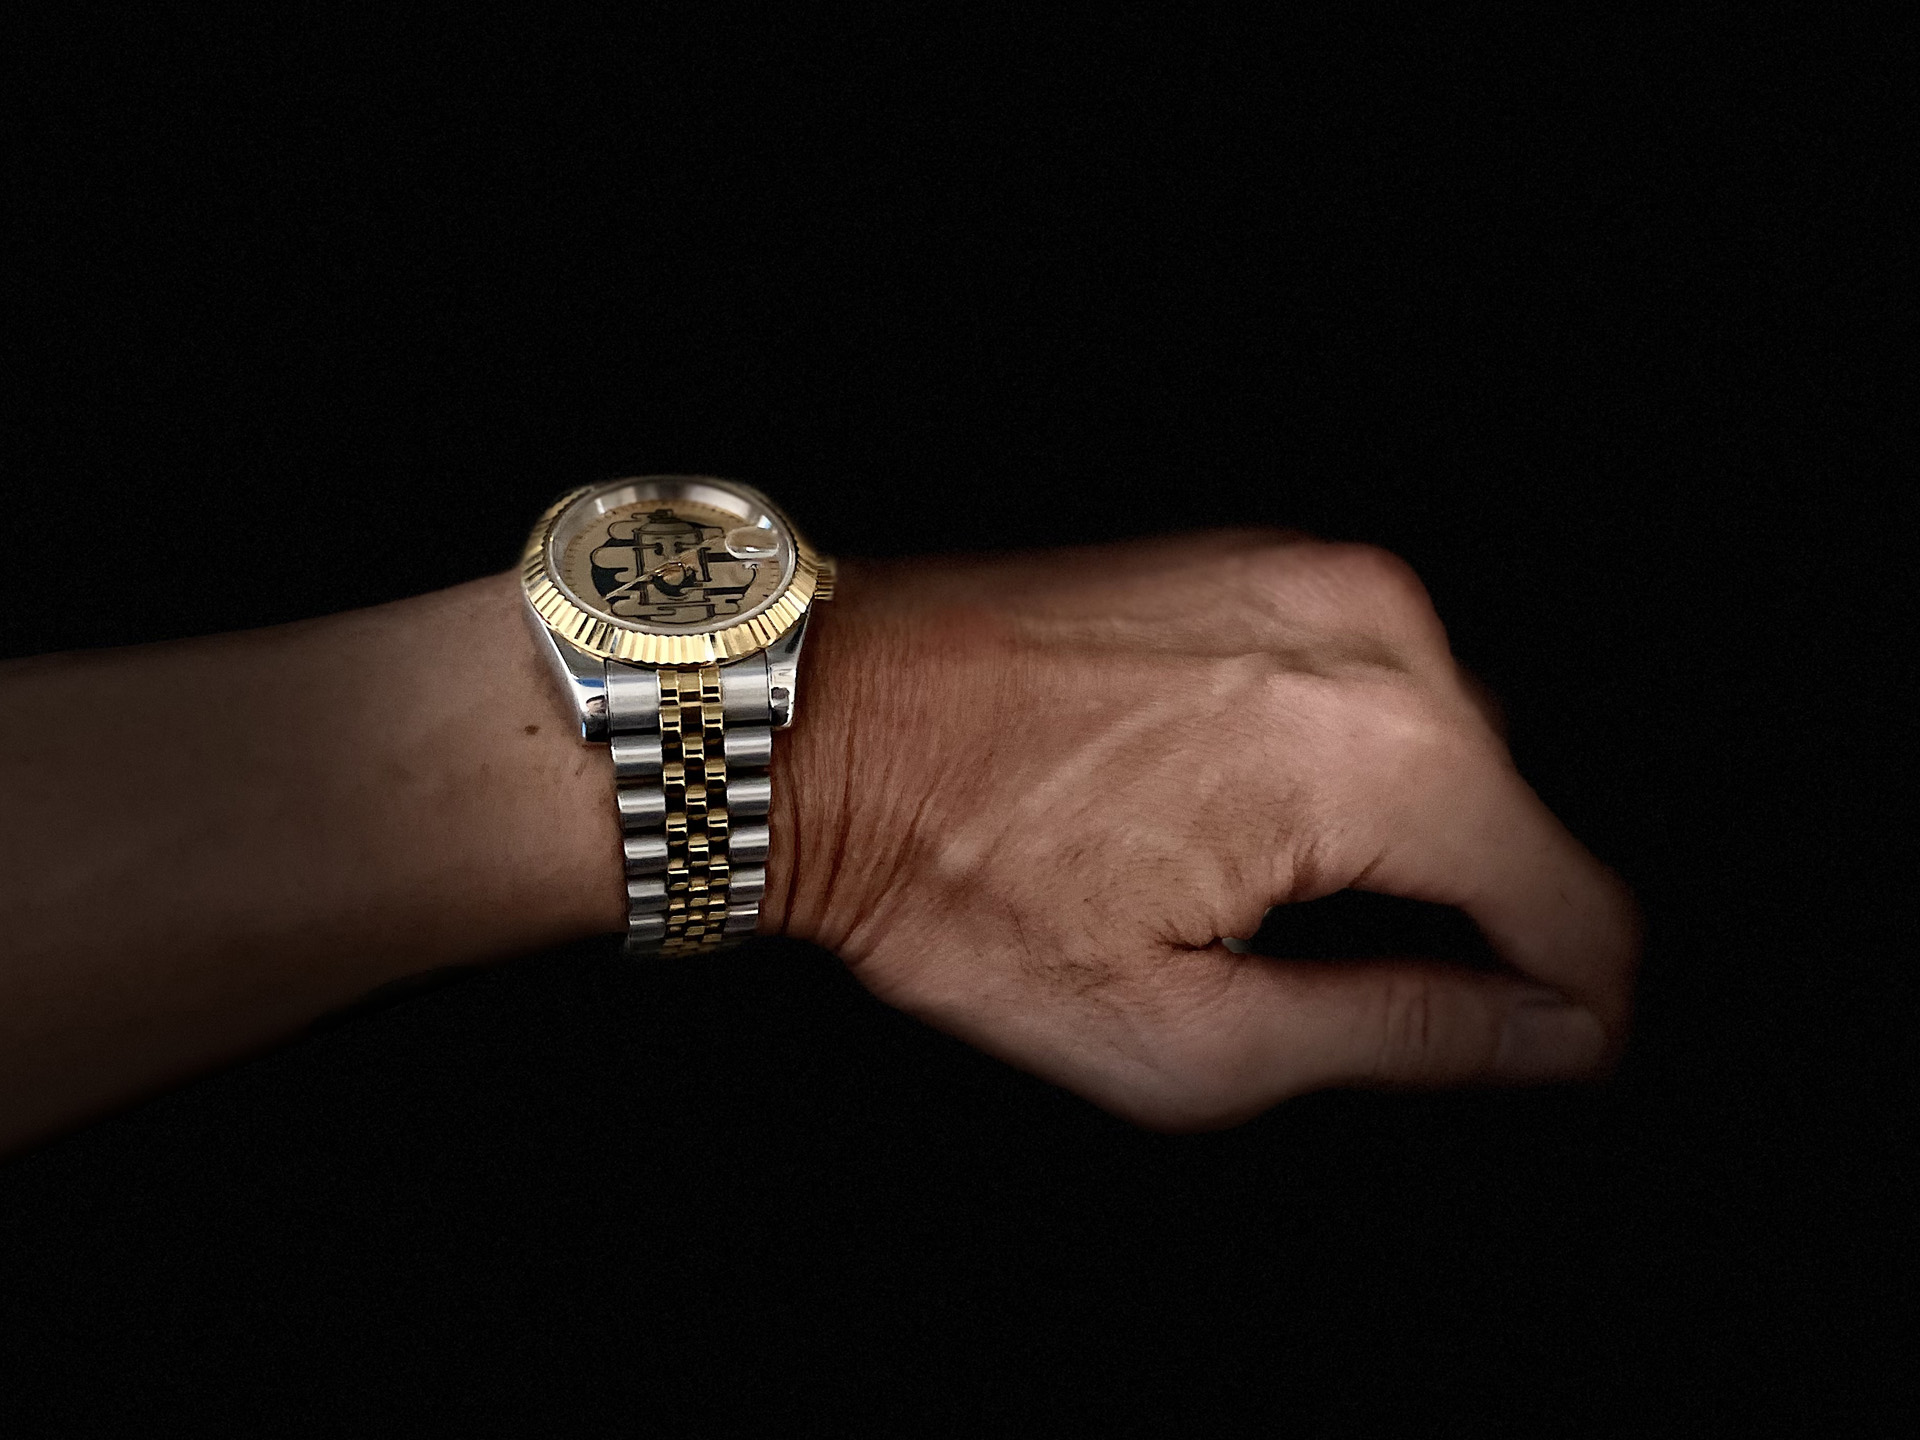 腕時計 ニュートラル ガクレ オリジナルウォッチ gakure neutral watch